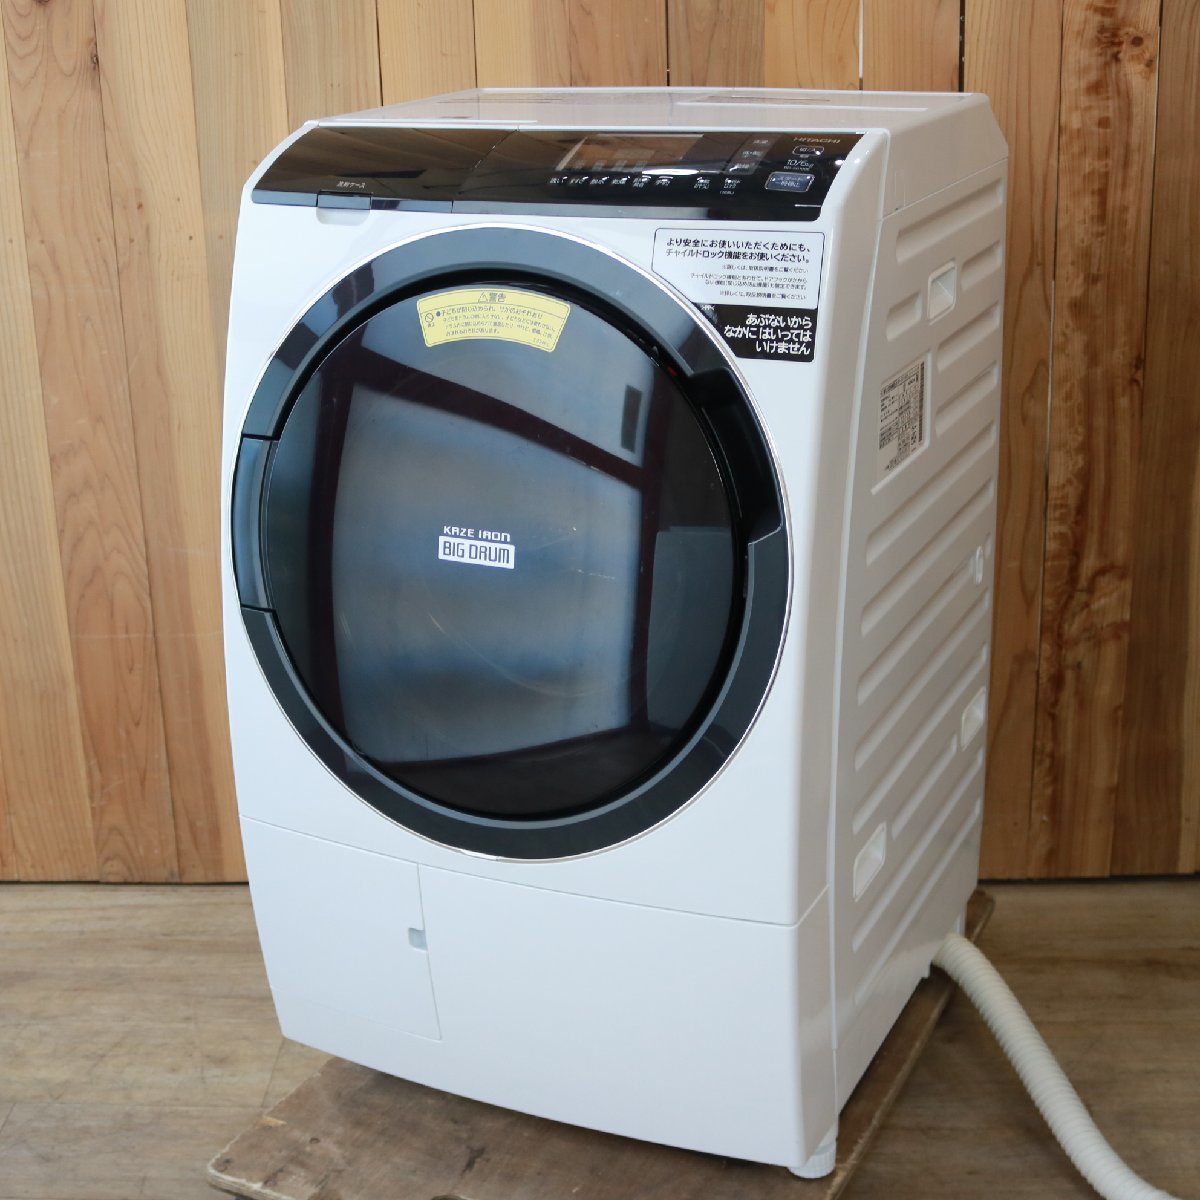 東京都武蔵野市にて 日立 ドラム式洗濯乾燥機 BD-SG100EL 2020年製 を出張買取させて頂きました。